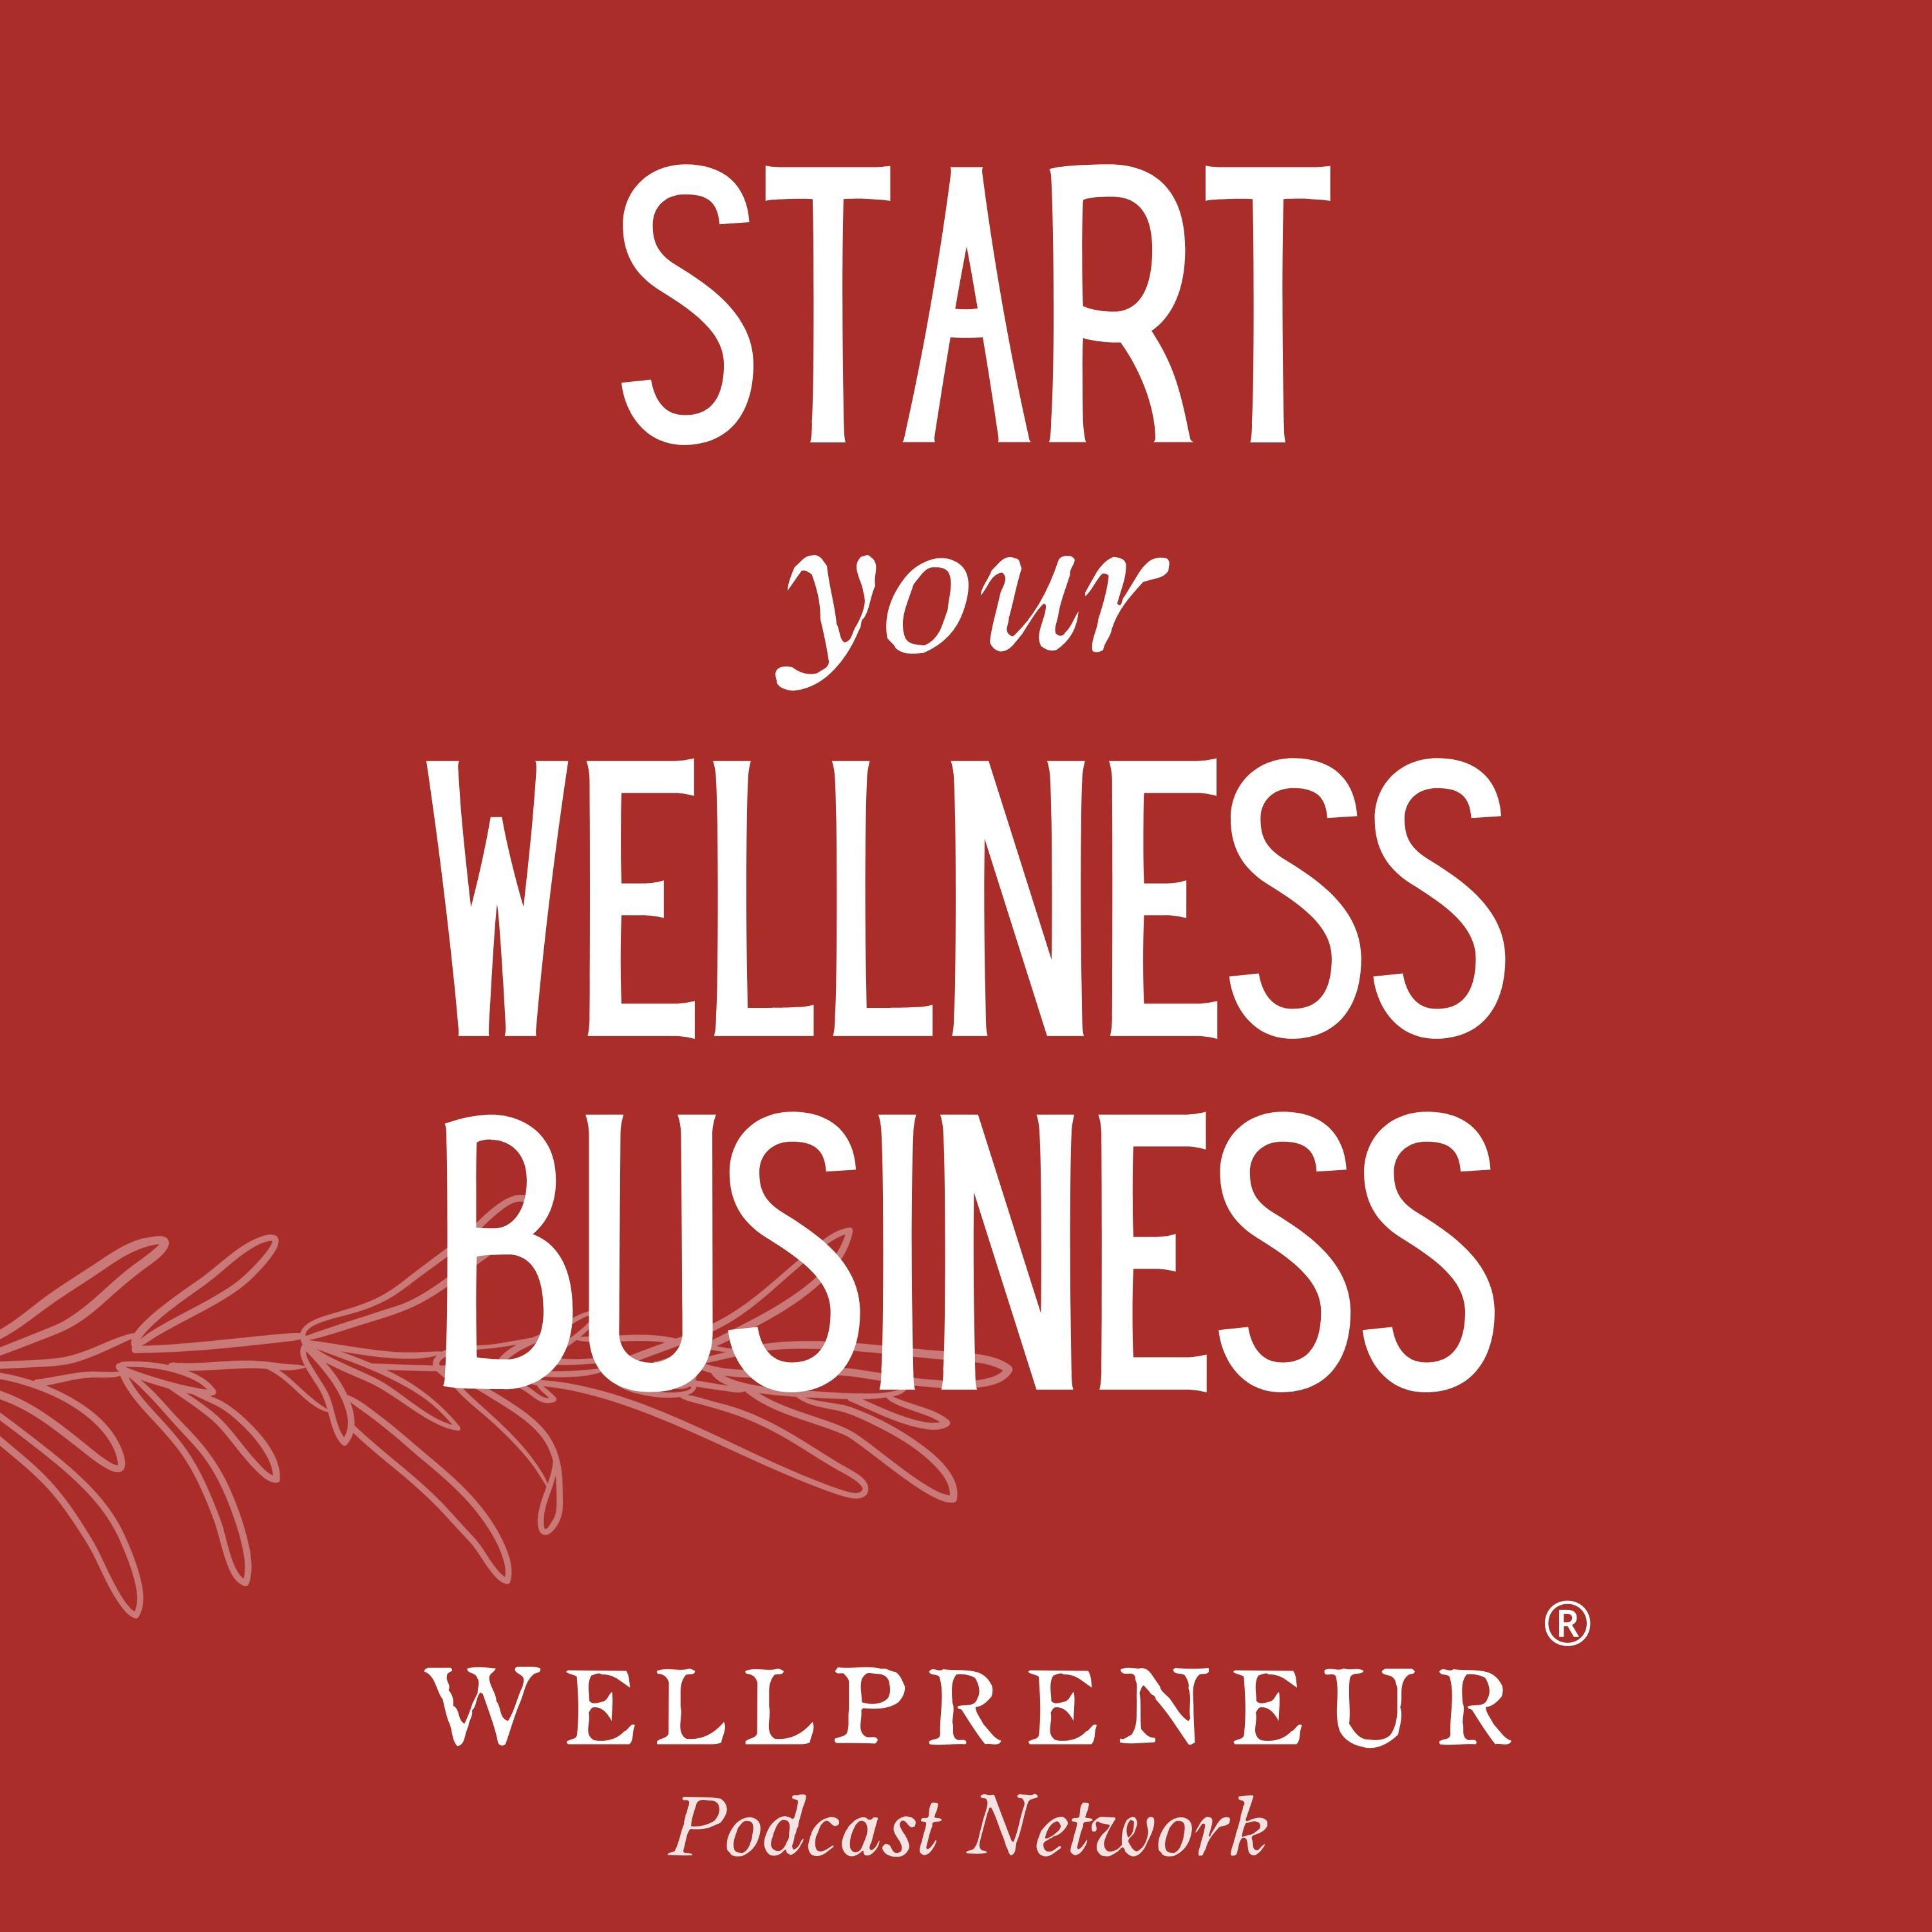 Start Your Wellness Business by Wellpreneur